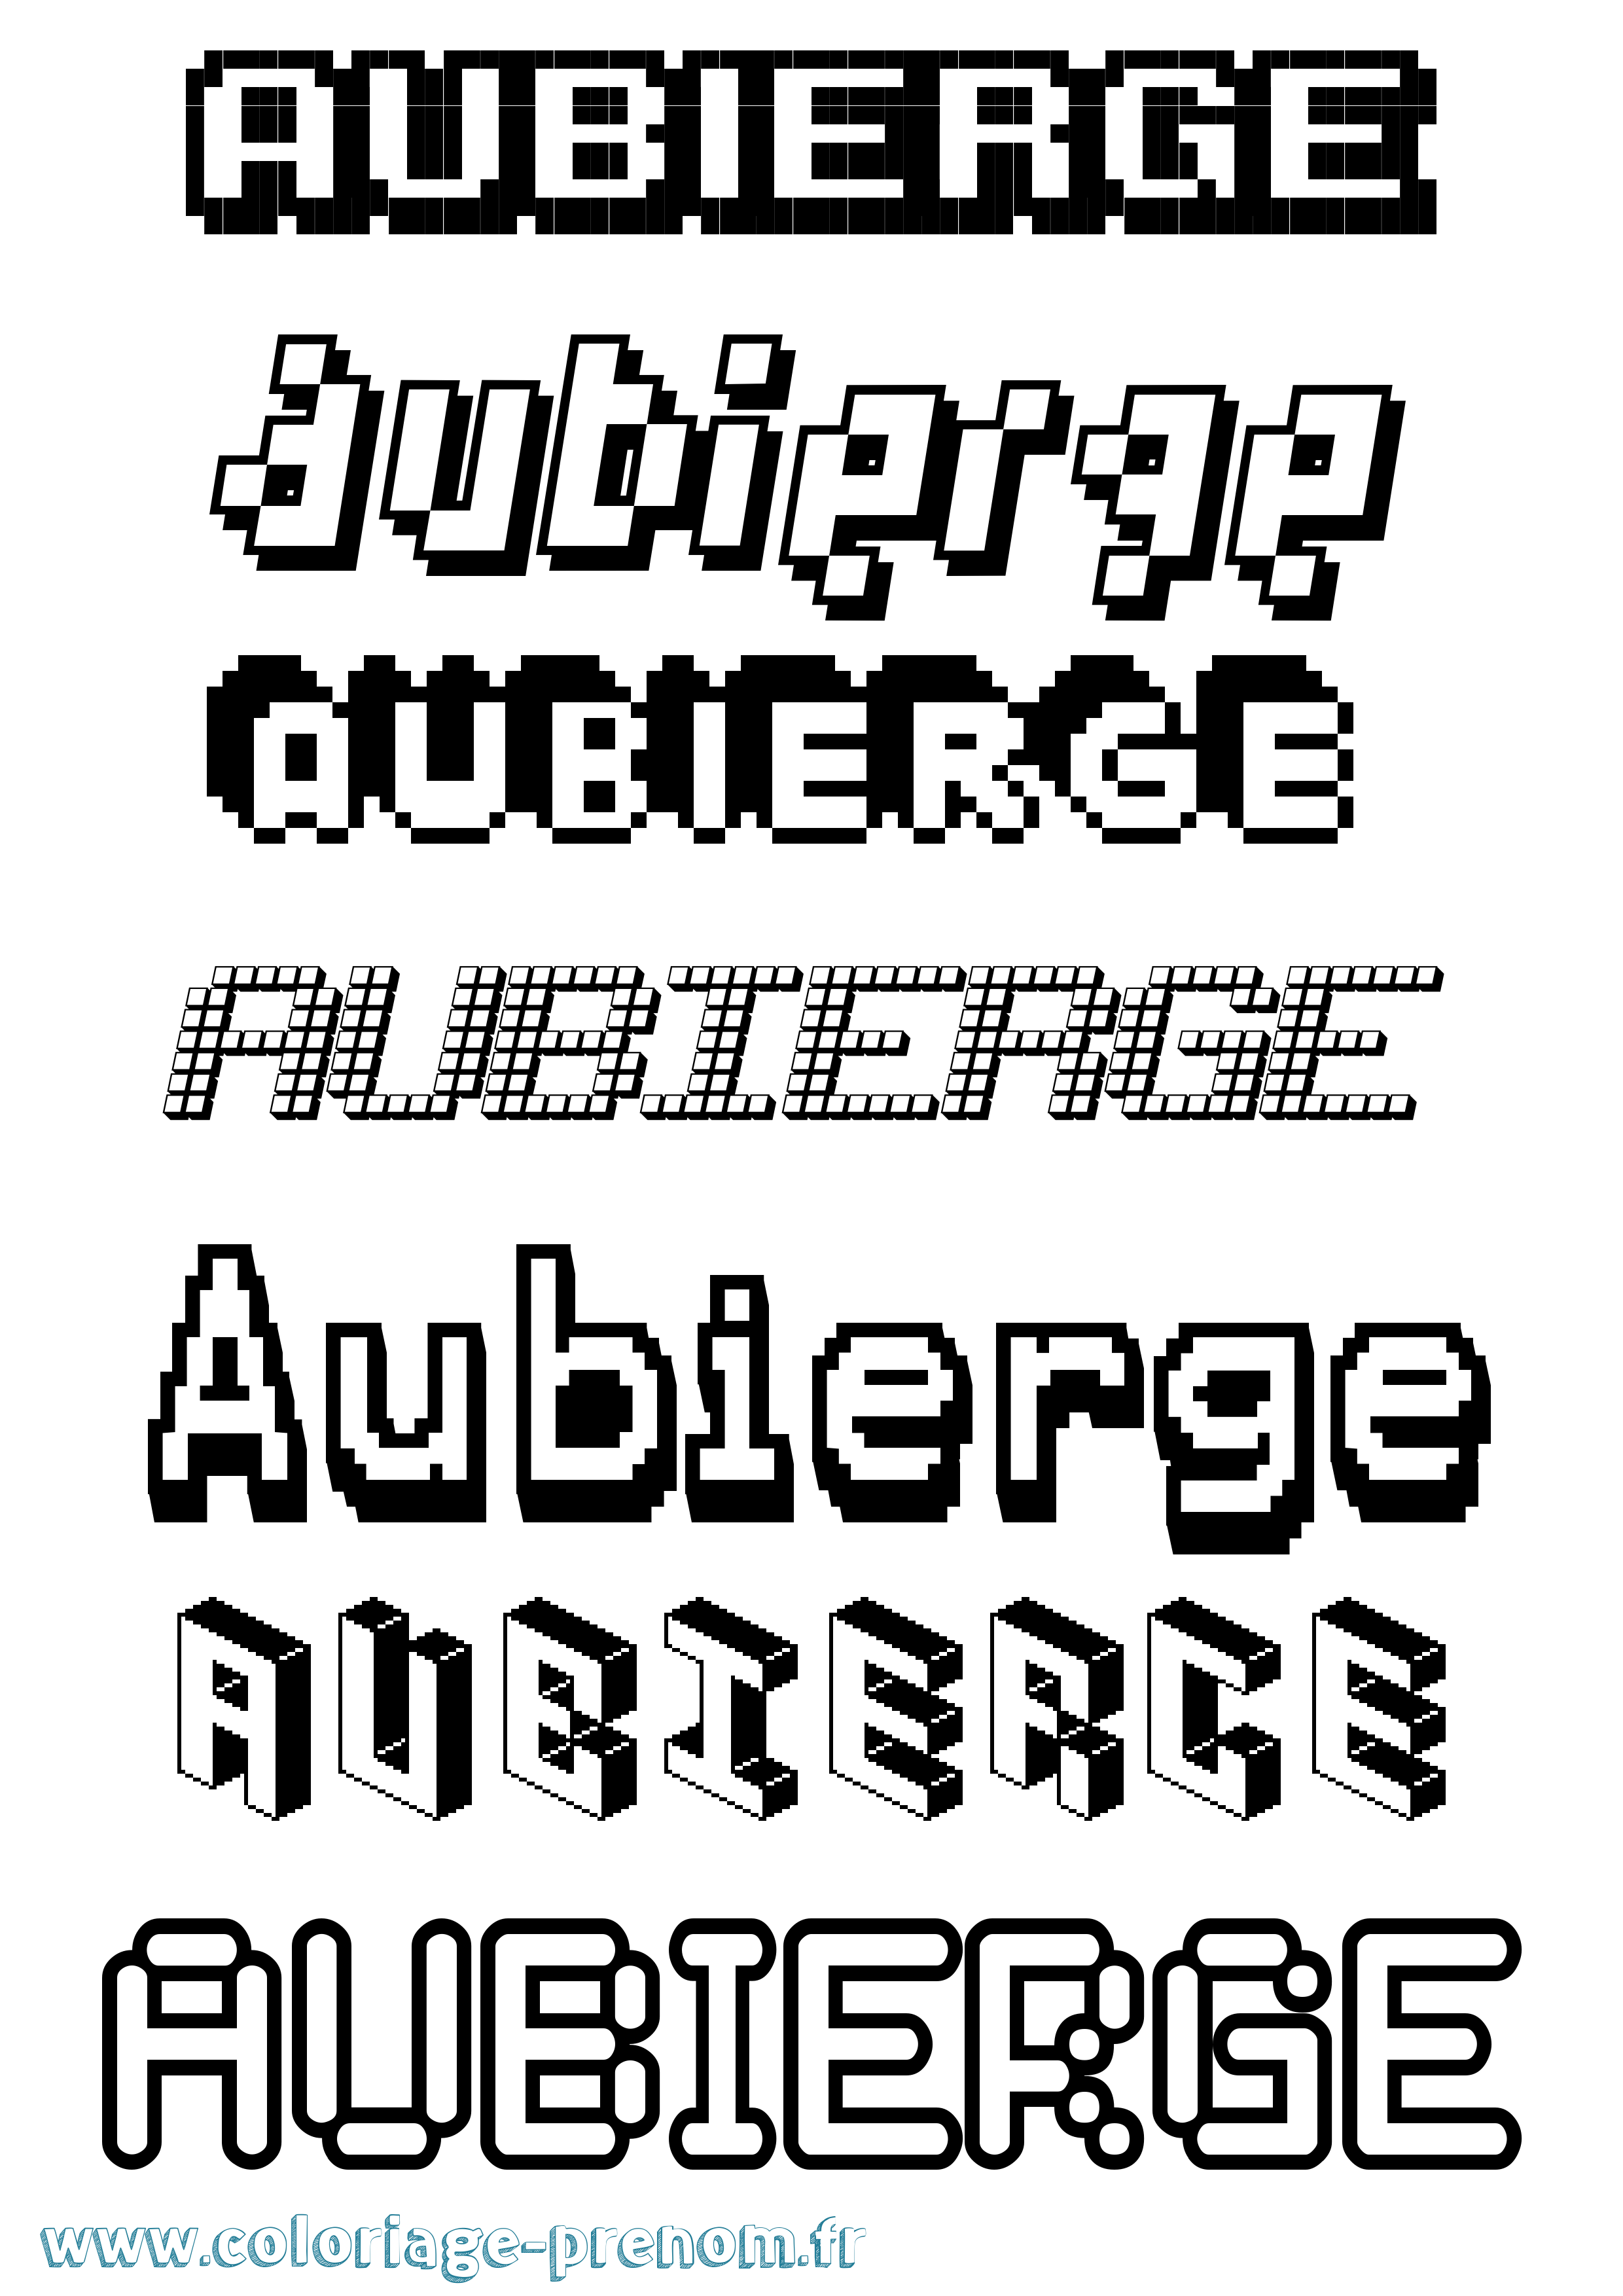 Coloriage prénom Aubierge Pixel